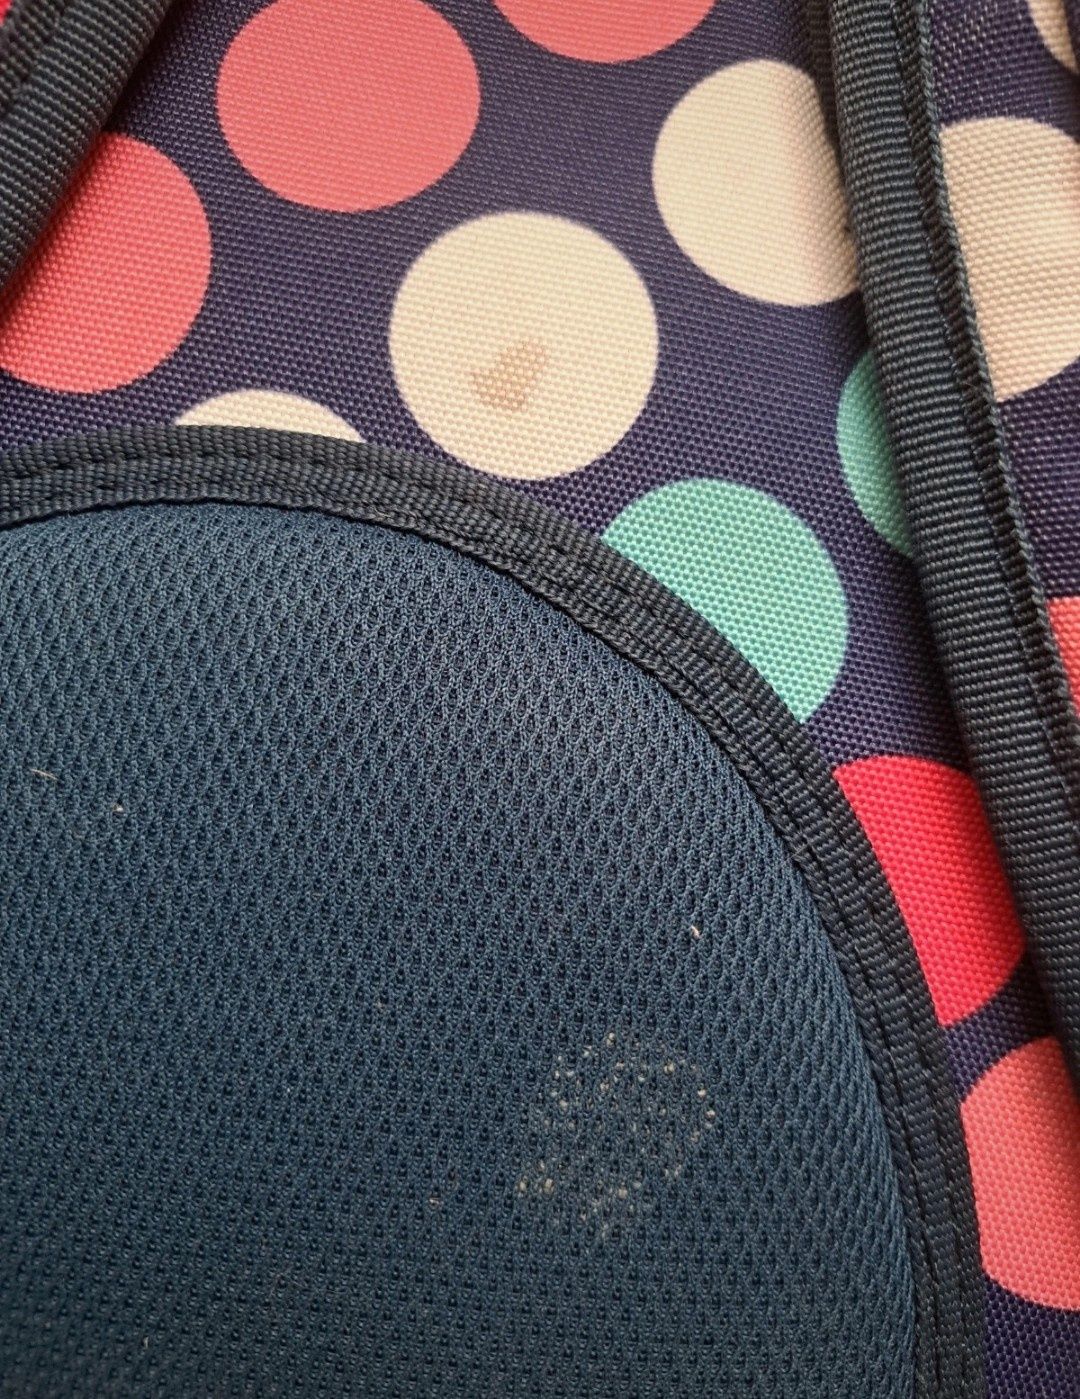 Wielokieszeniowy Plecak Szkolny CoolPack Różowo-Niebiesko-Biały